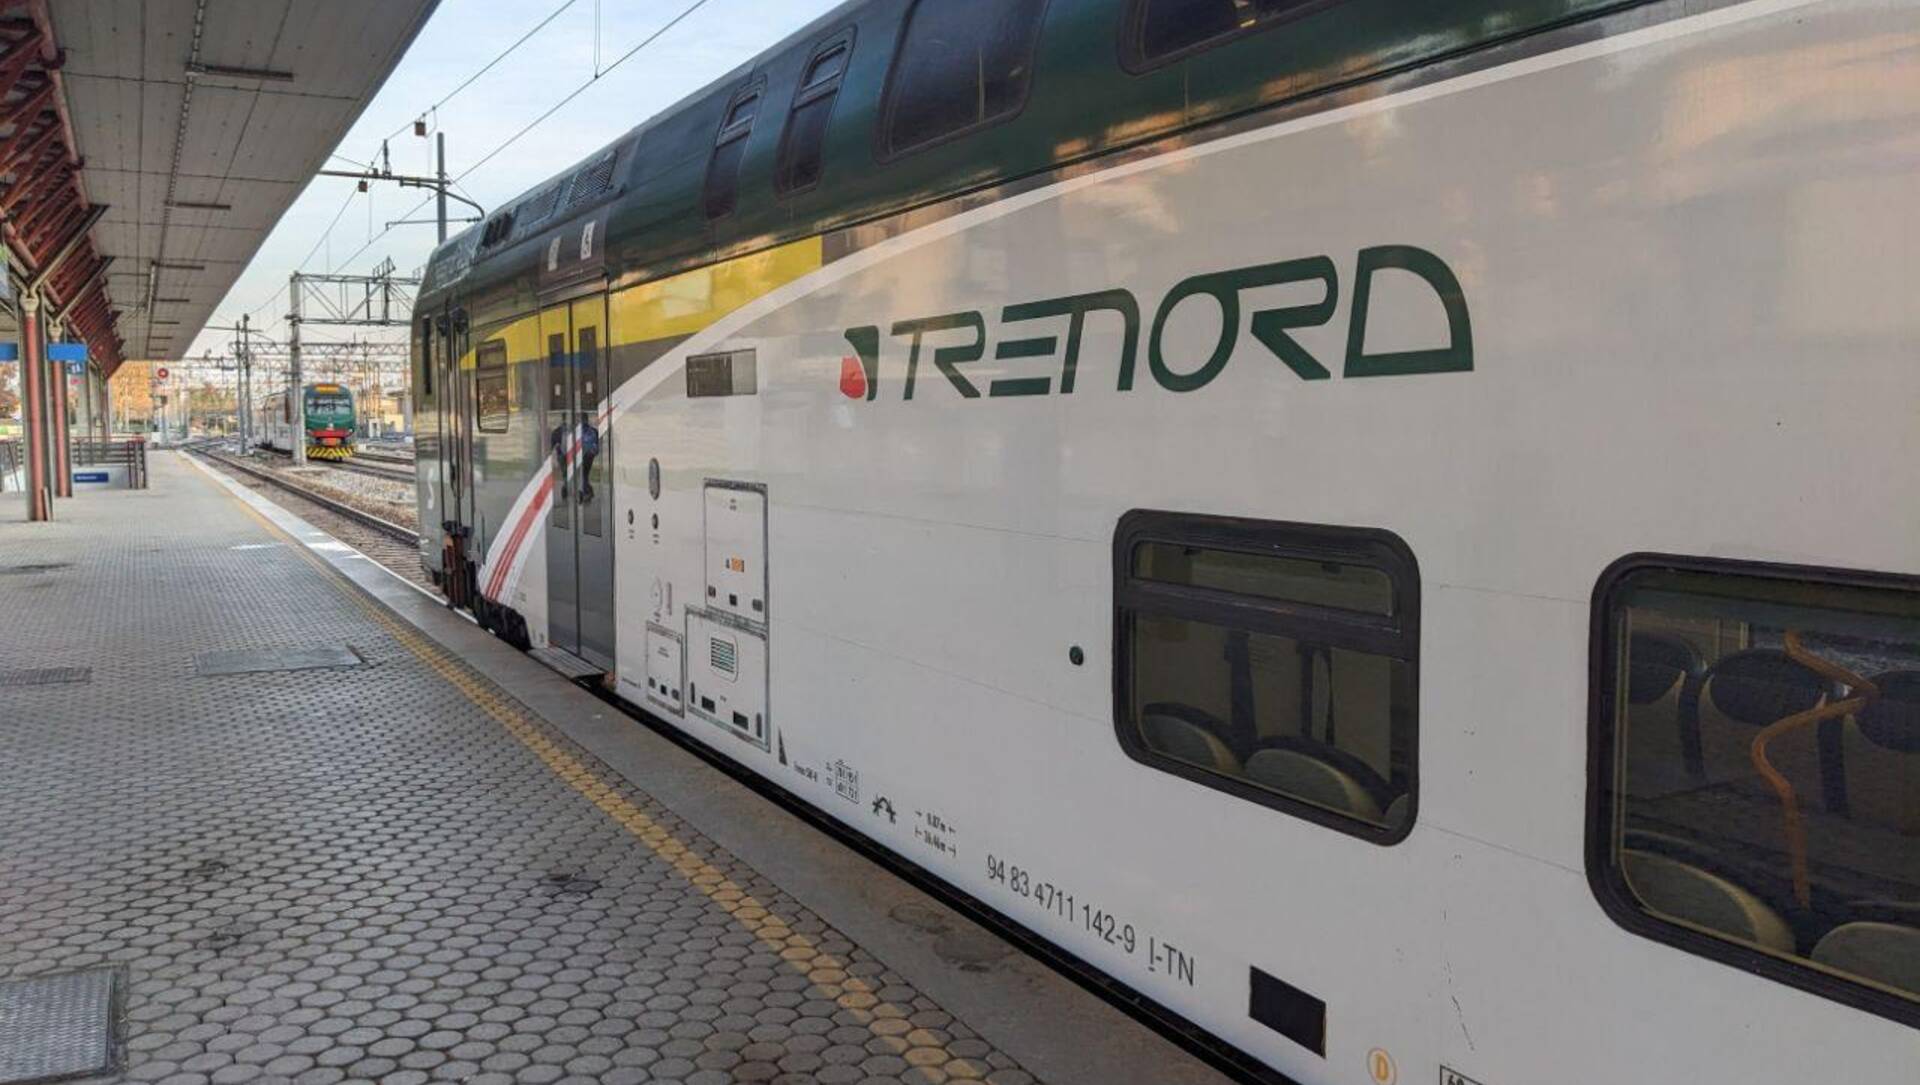 Mancato rinnovo della convenzione per i militari sui treni Trenord, Duca: “Un problema per la sicurezza in Lombardia”